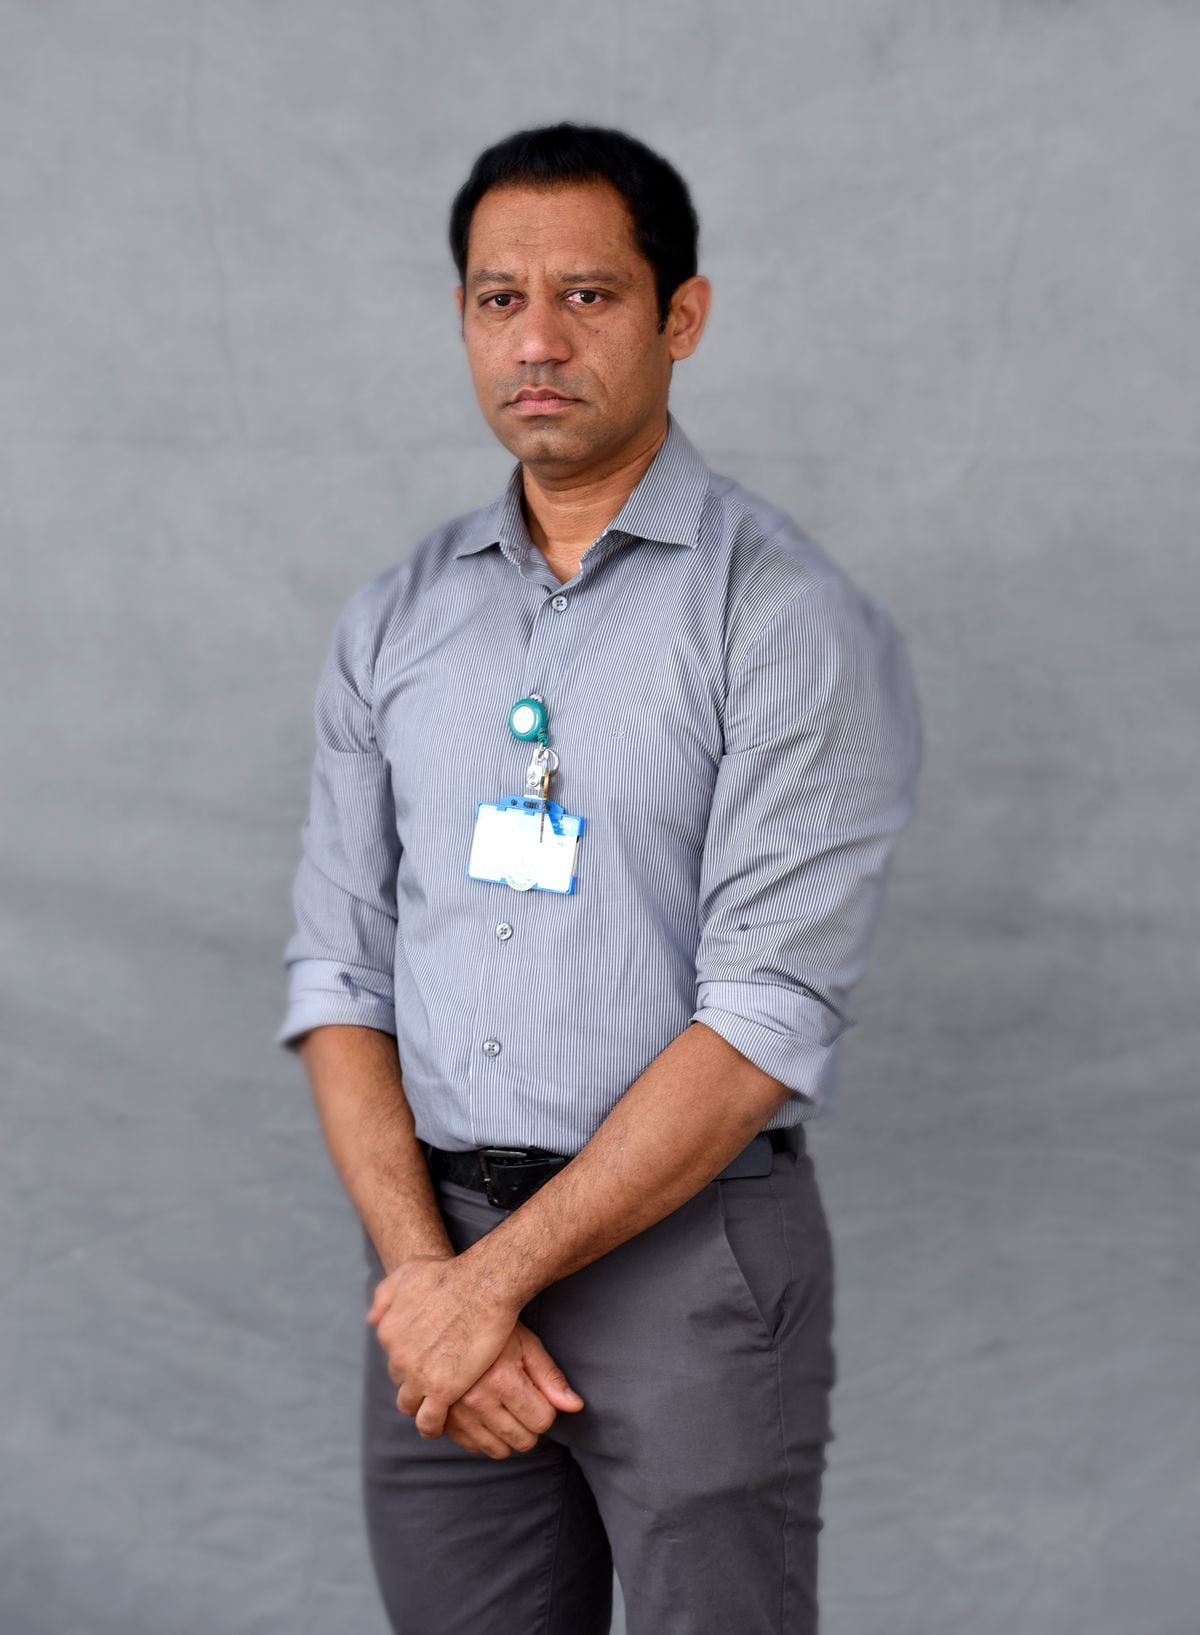 Critical care services lead Dr Aditya Kuravi